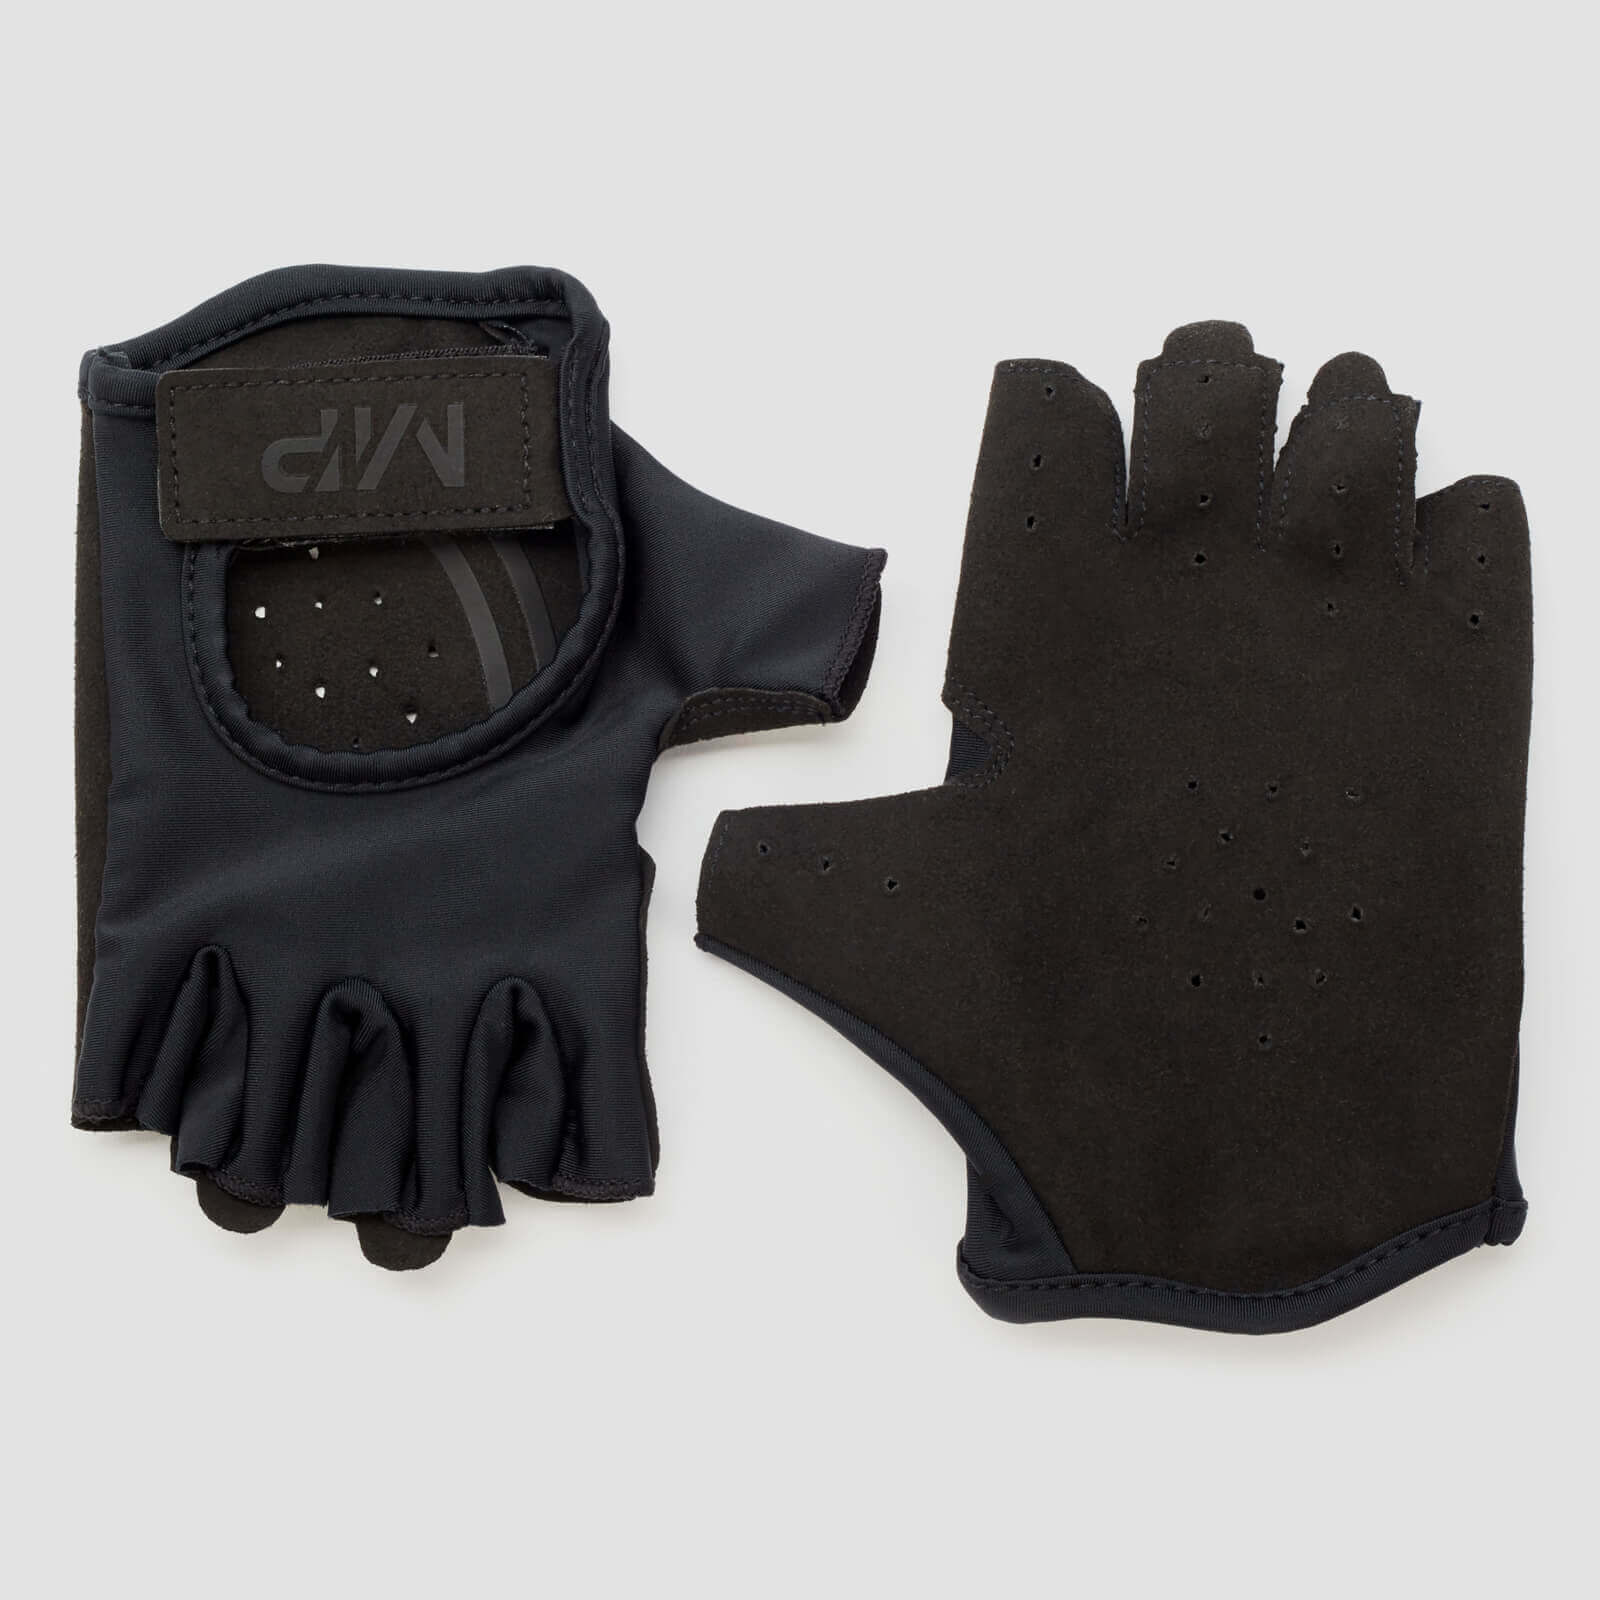 MP Men's Lifting Gloves -käsineet - Musta - L - Musta